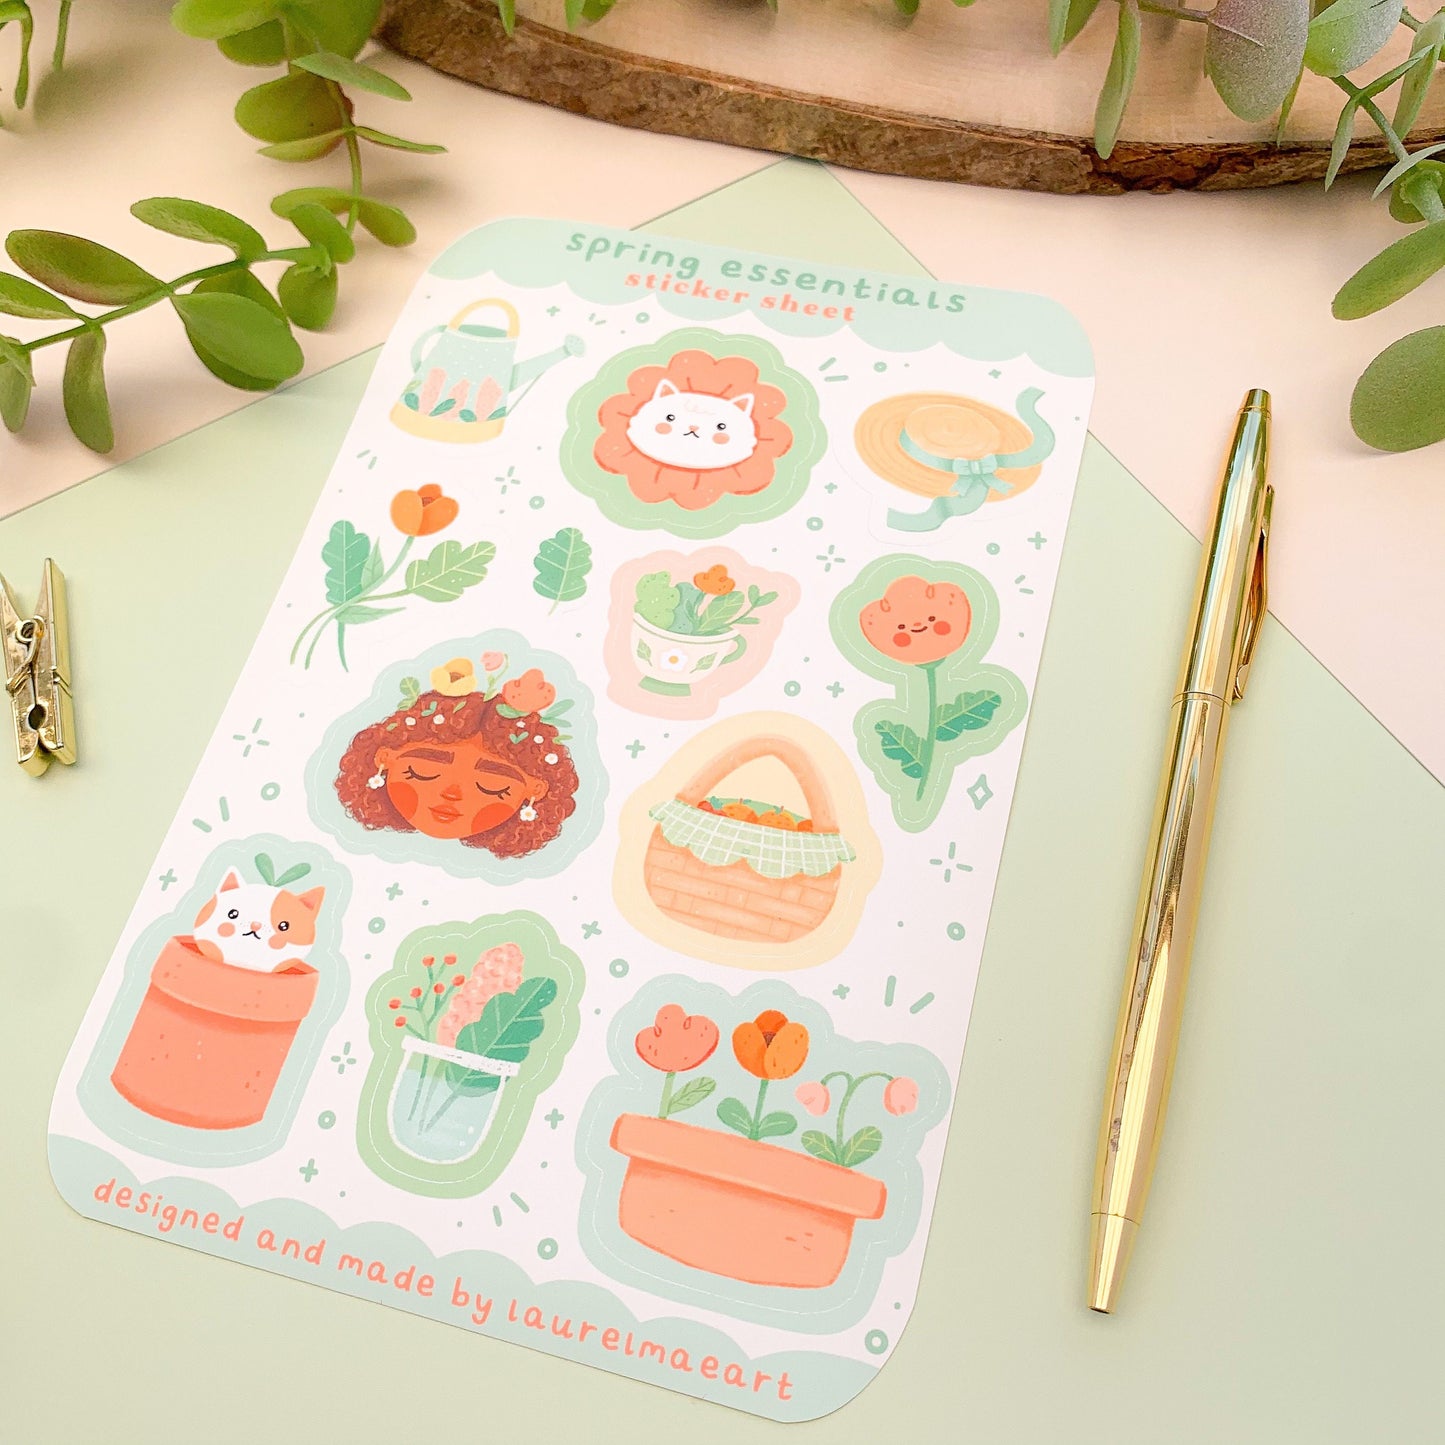 Spring Essentials - Sticker Sheet